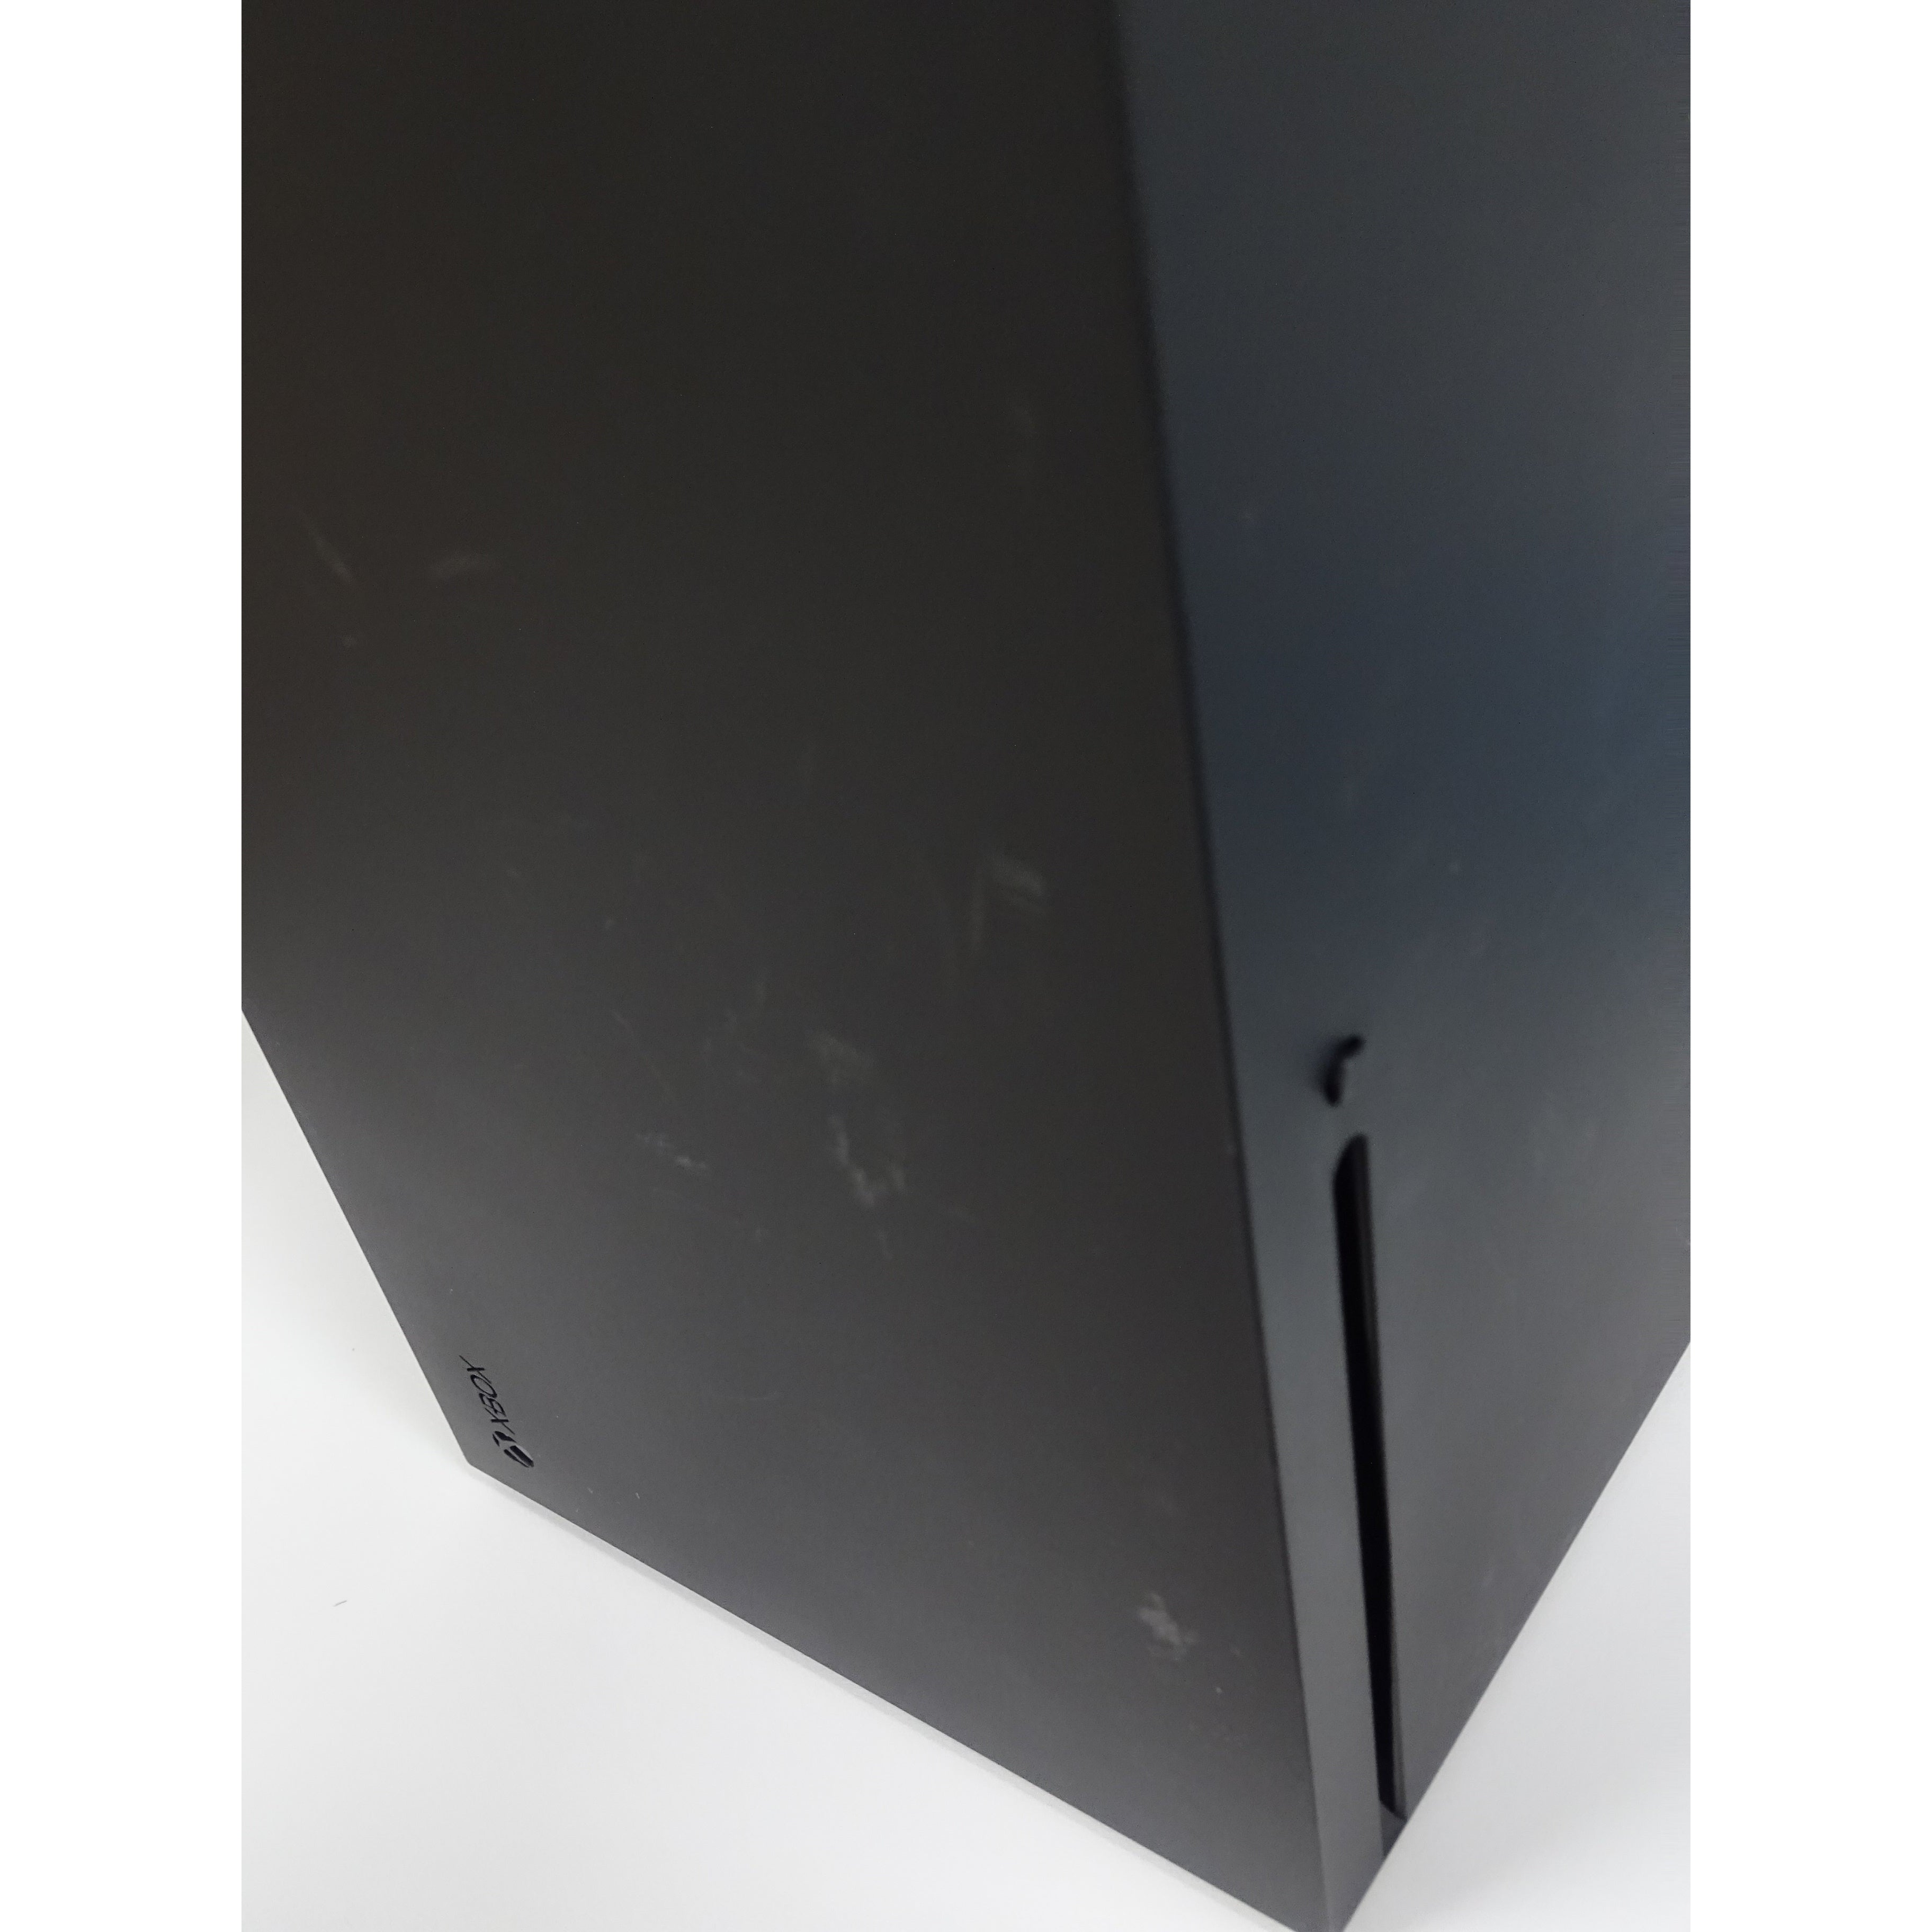 Xbox Series X 1TB Console, Black - Fair Condition